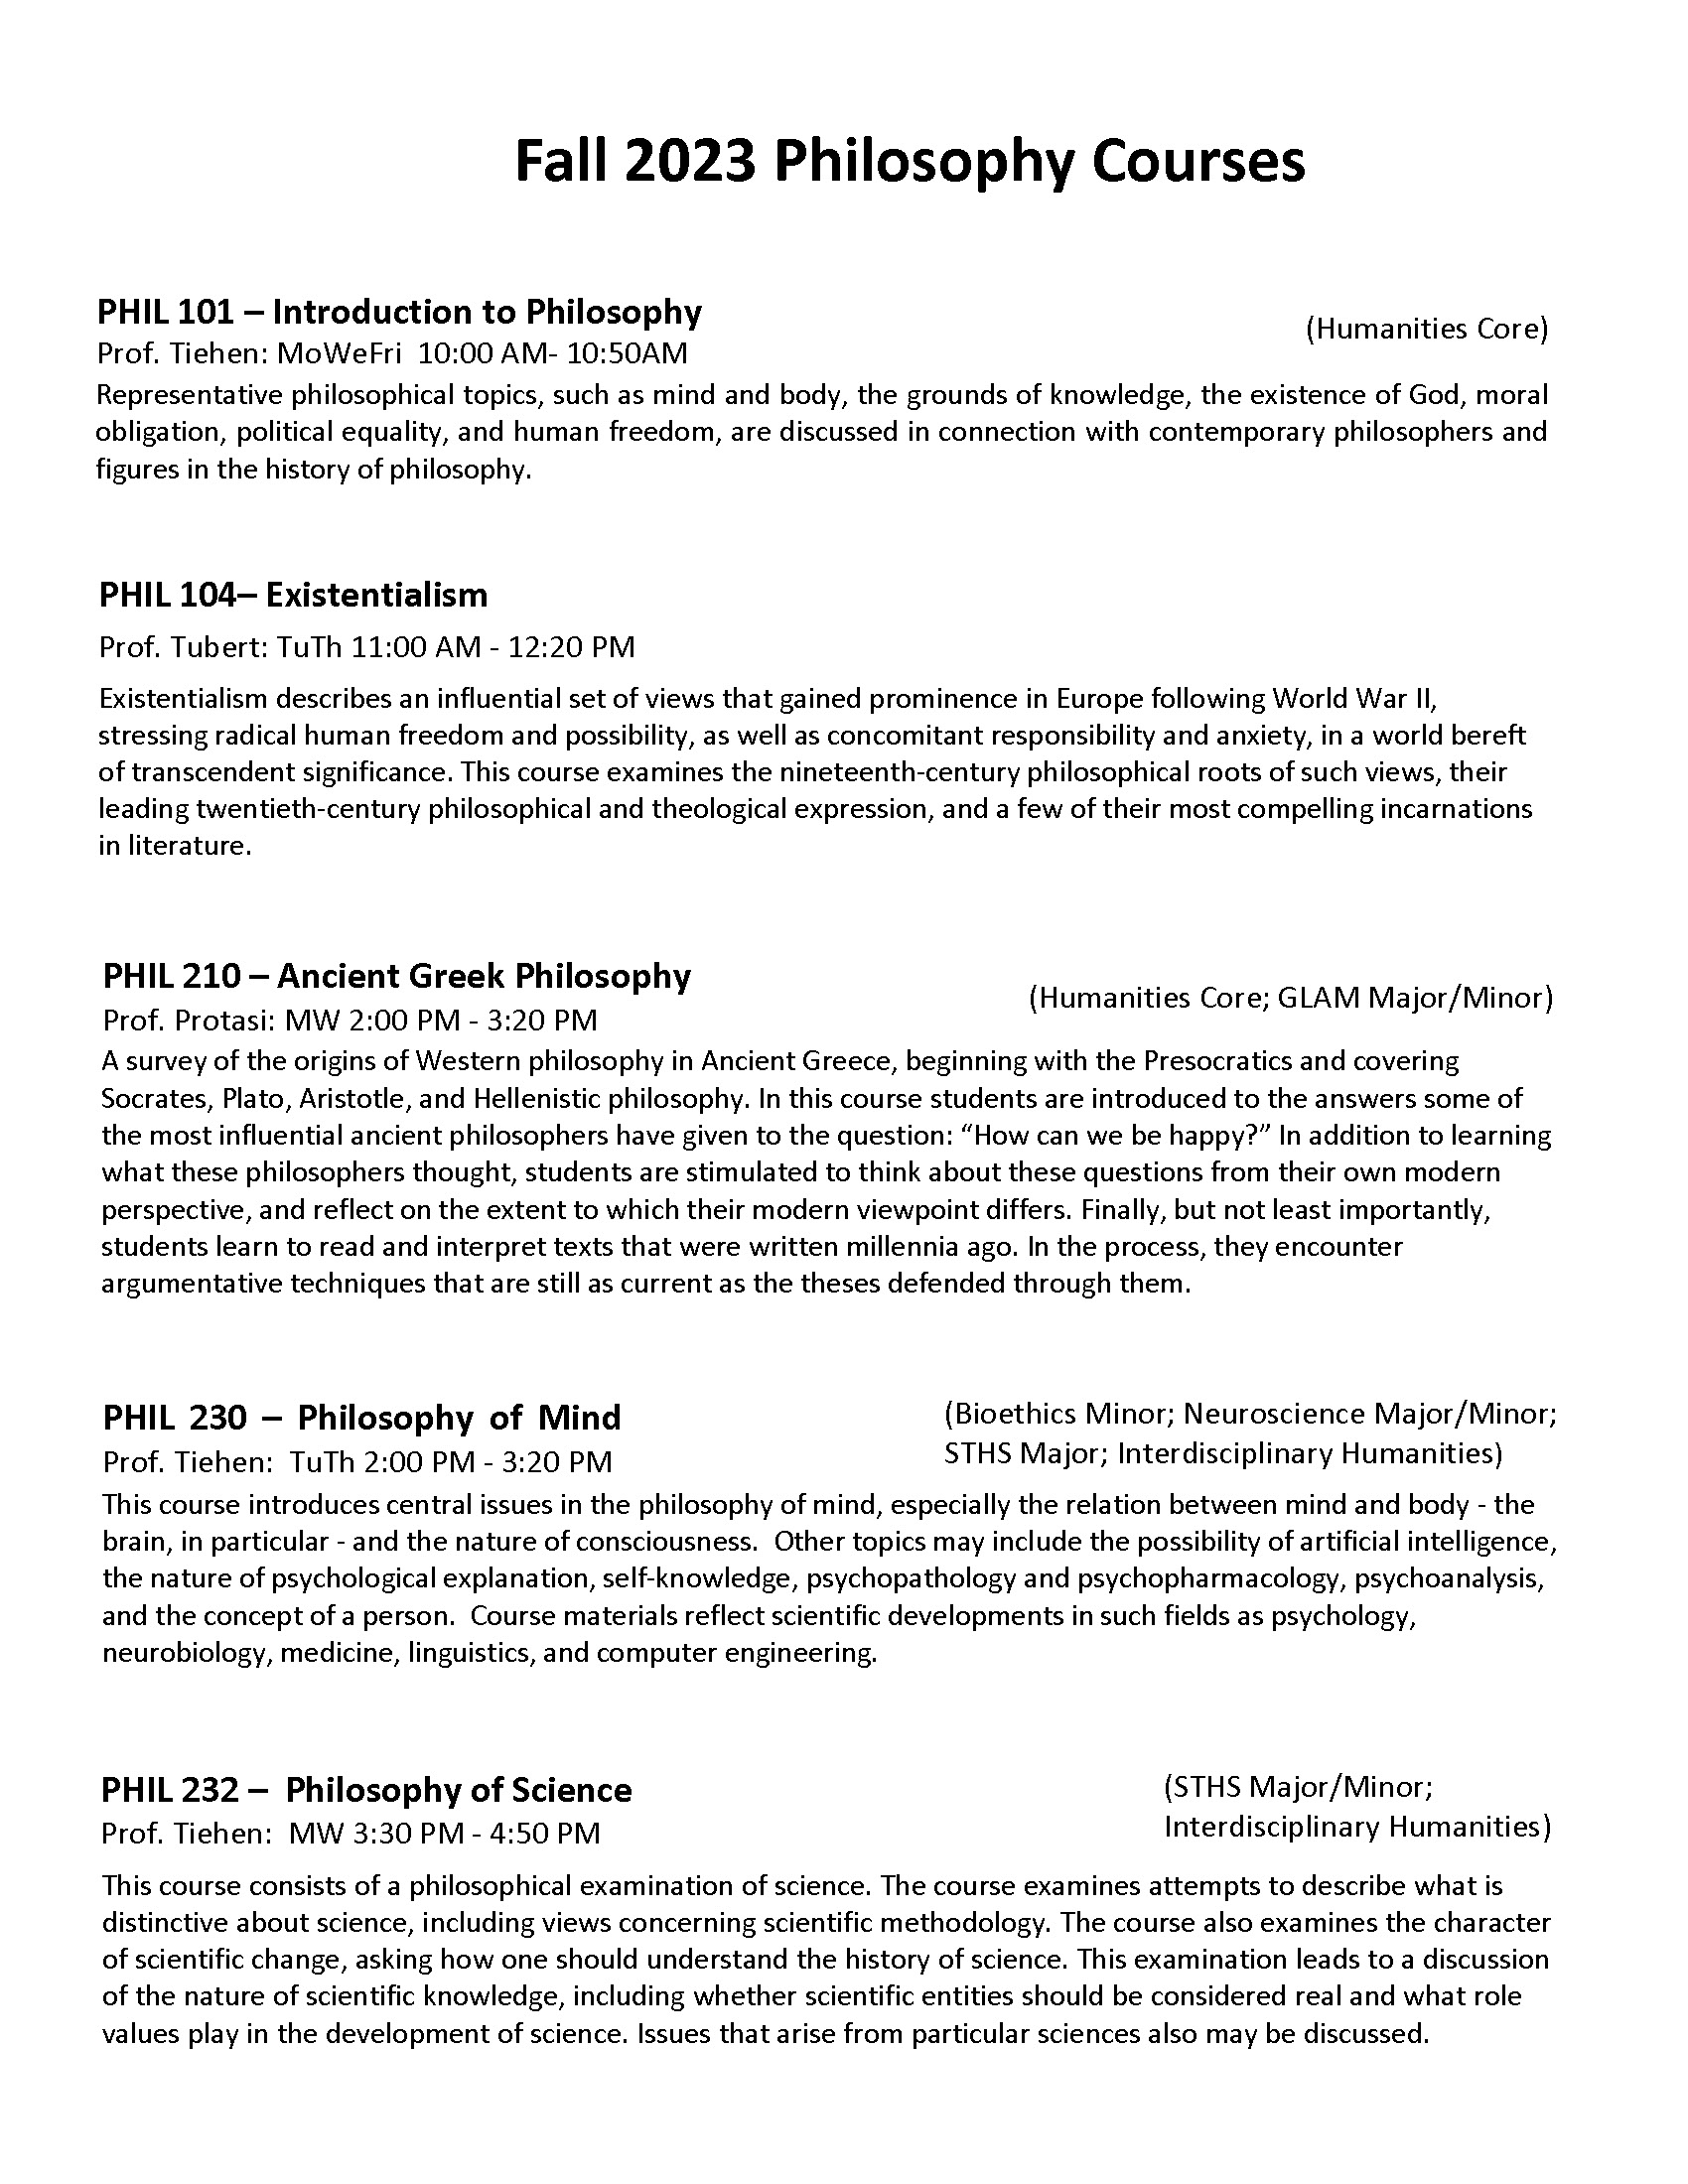 F23 Philosophy Course Descriptions_Page_1